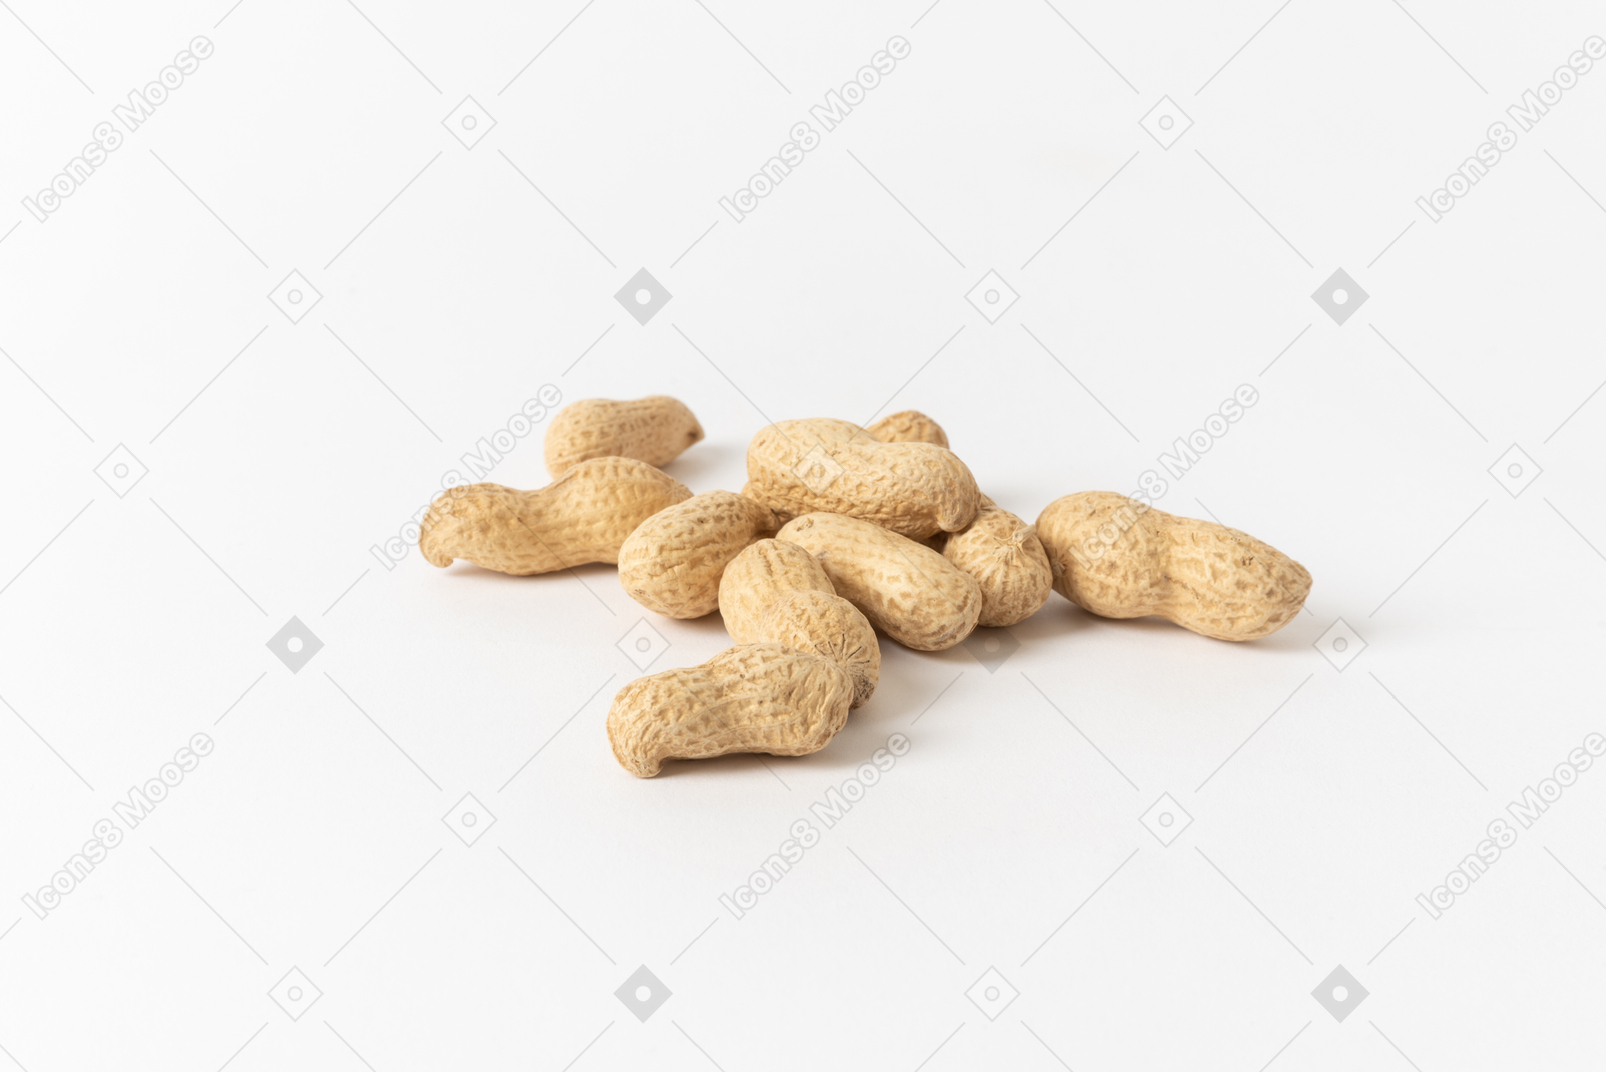 Les cacahuètes grillées et salées sont une collation classique